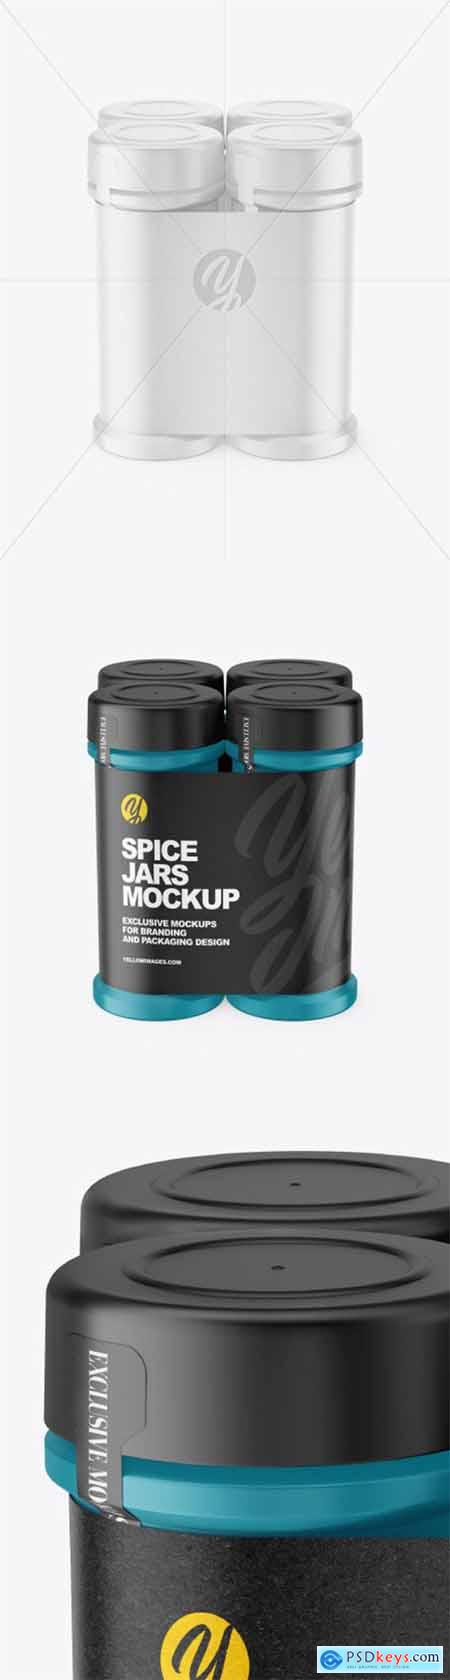 Four Matte Spice Jars Mockup 80618